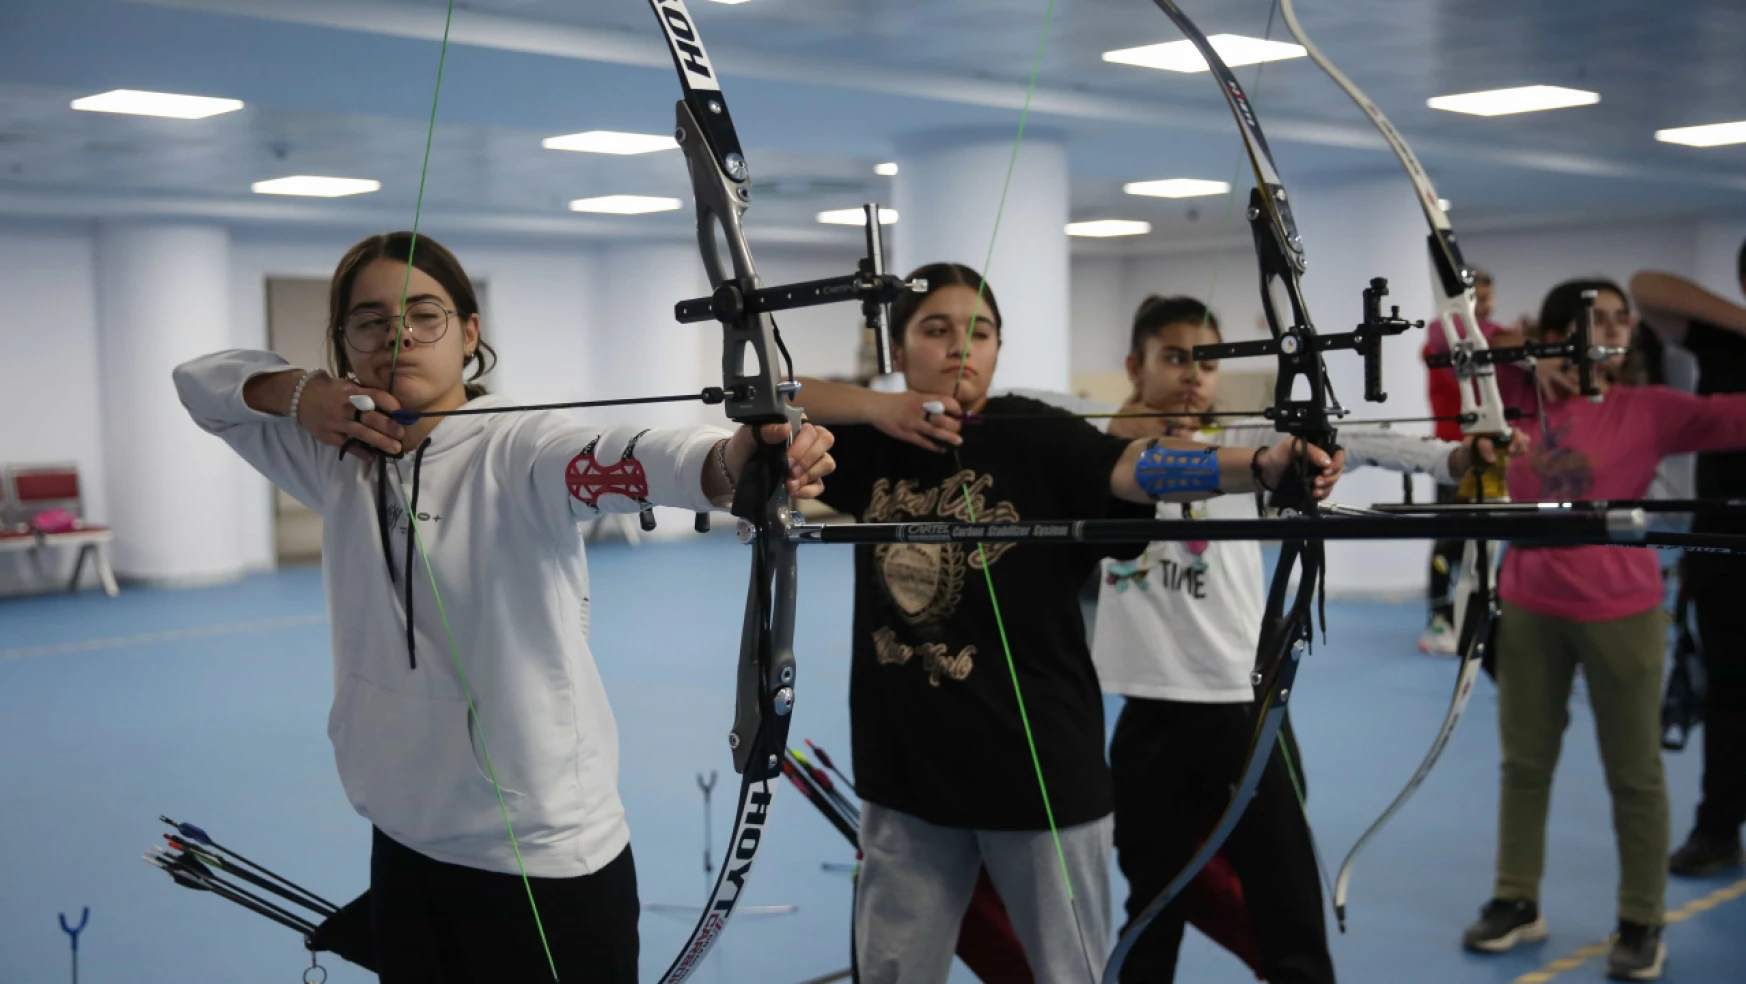 Elazığ'da Sporcular Mete Gazoz Gibi Şampiyon Olmanın Hedefiyle Yay Çekiyor